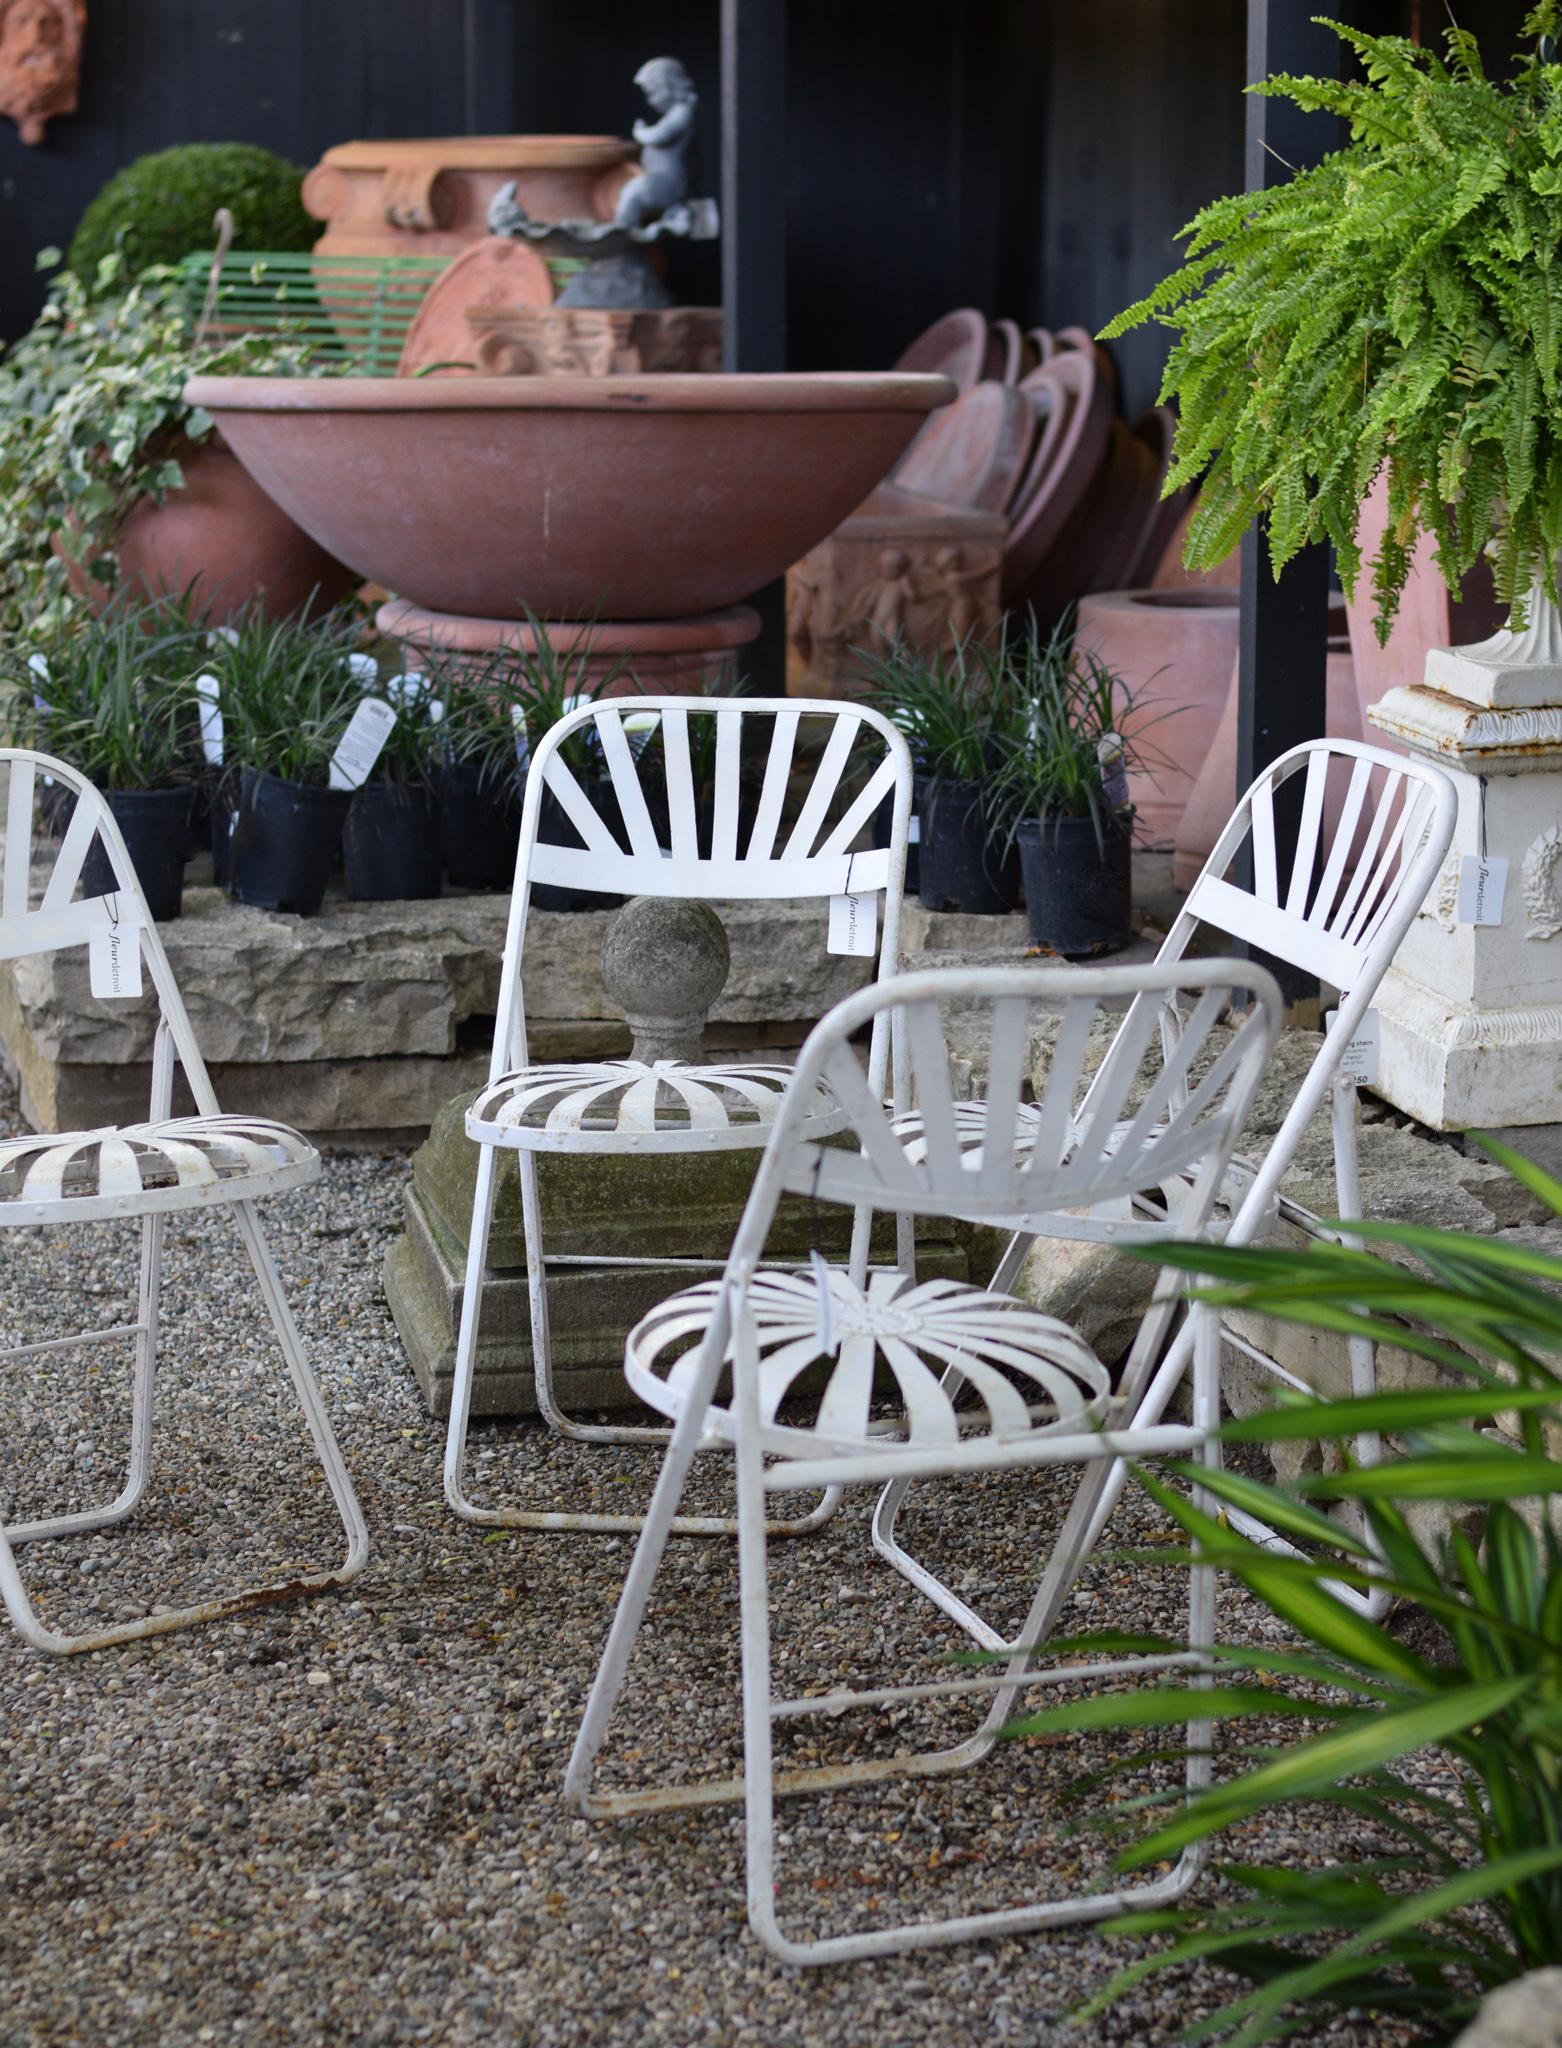 Für Ihre Betrachtung, eine atemberaubende Reihe von vier klappbaren Gartenstühlen. Diese Eisenstühle, die Modellen aus dem späten 19. Jahrhundert nachempfunden sind, befinden sich in einem ausgezeichneten, stabilen Zustand und sind für jeden